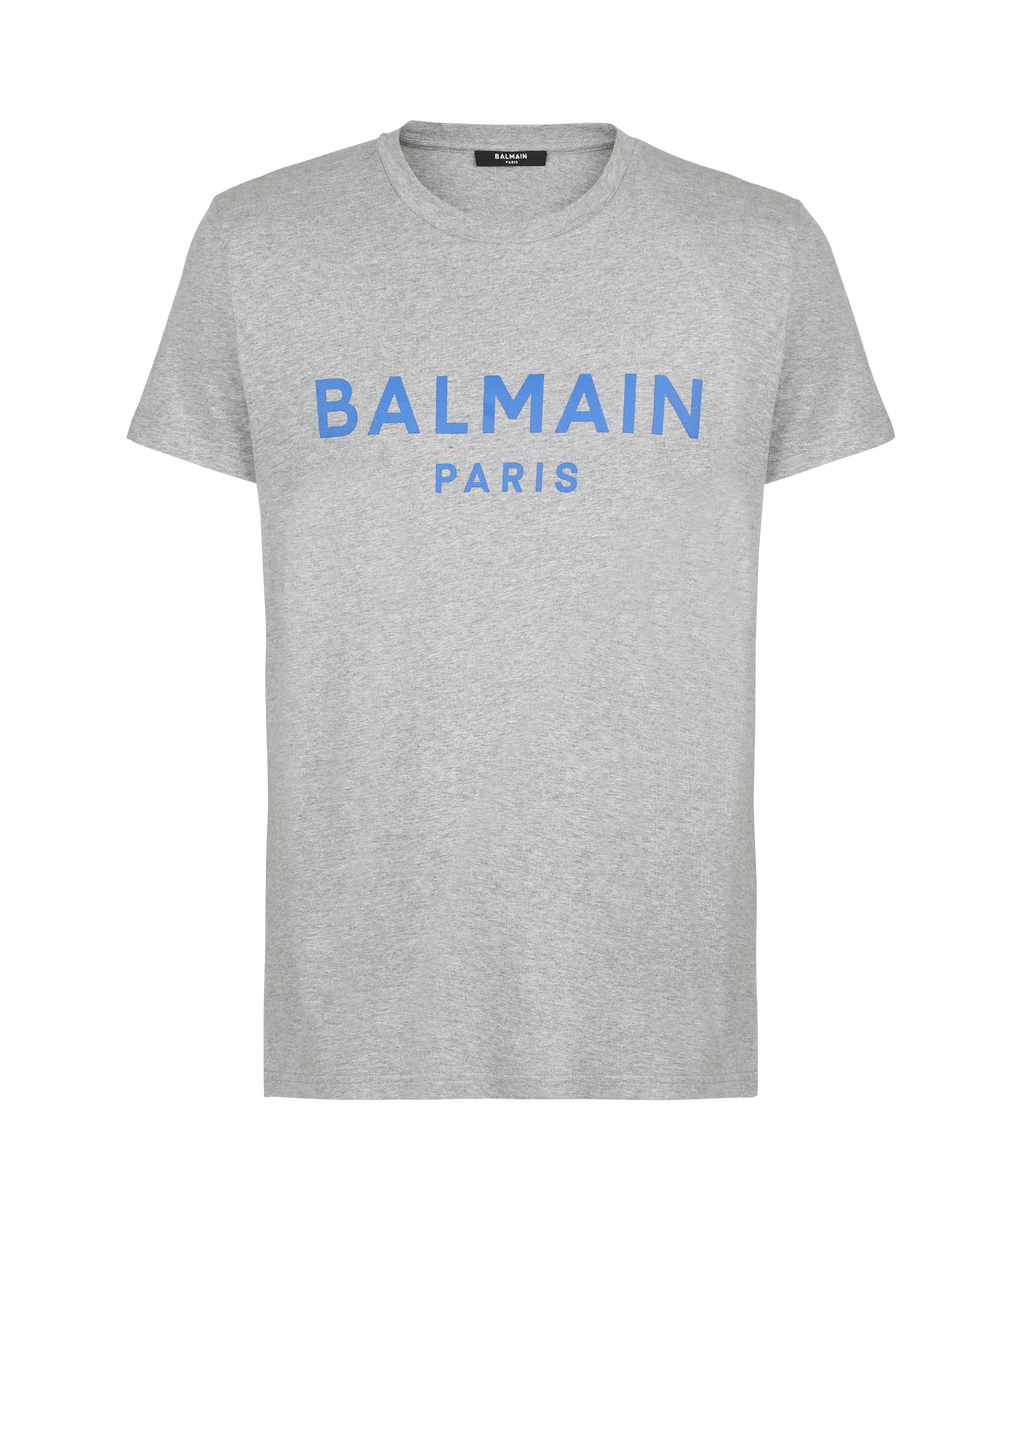 Cotton T-shirt with Balmain logo print, grey, hi-res